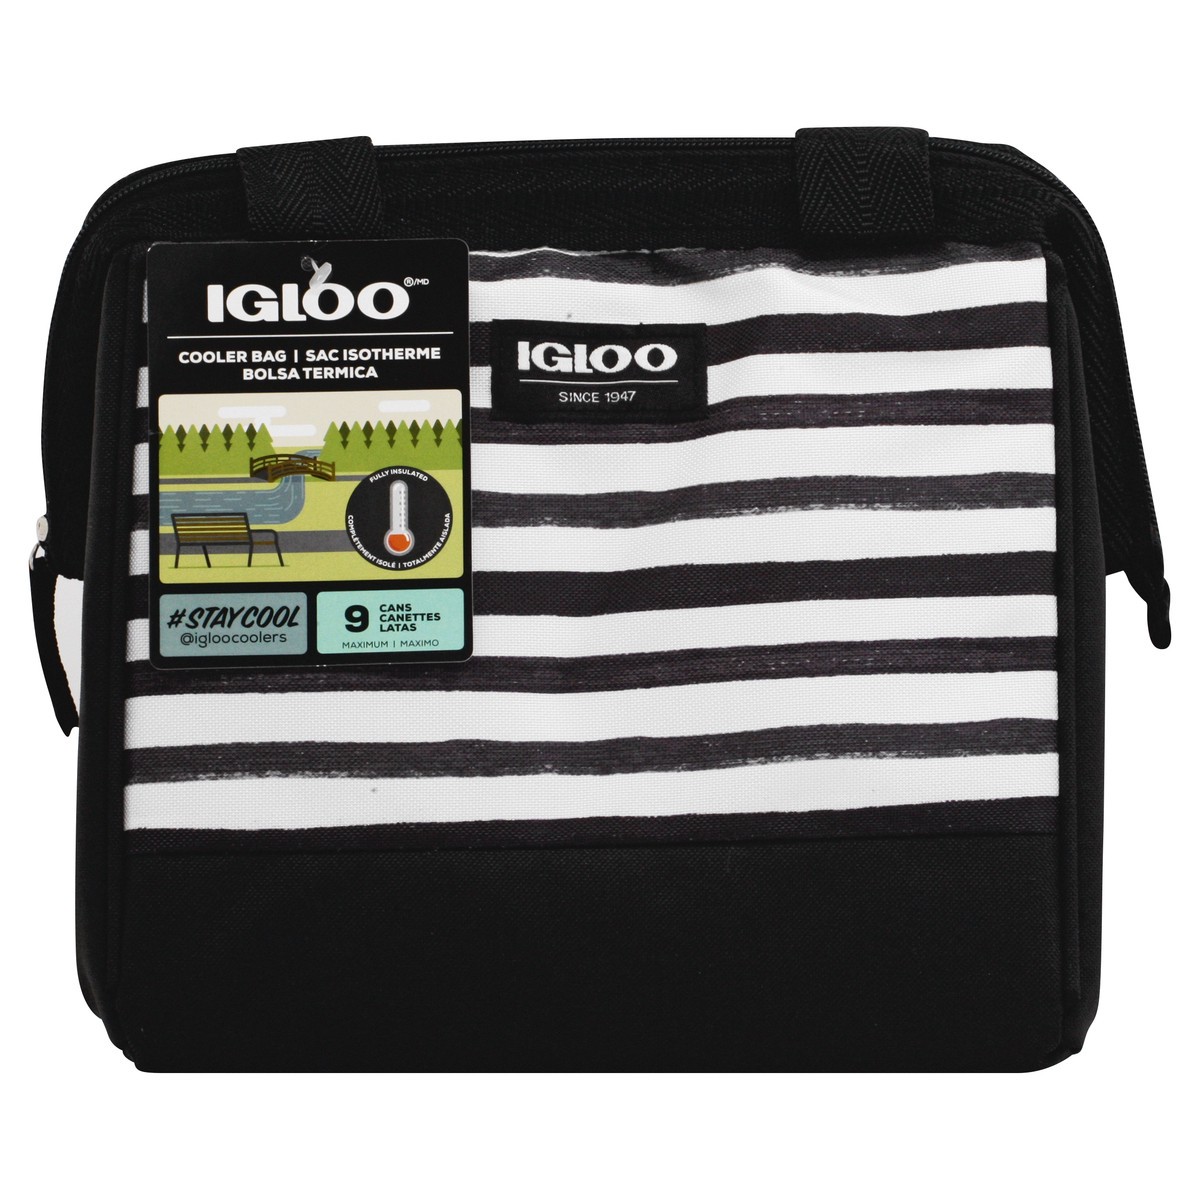 slide 1 of 8, Igloo Cooler Bag, Black/White Stripes, Leftover Tote, 9 Cans, 1 ct